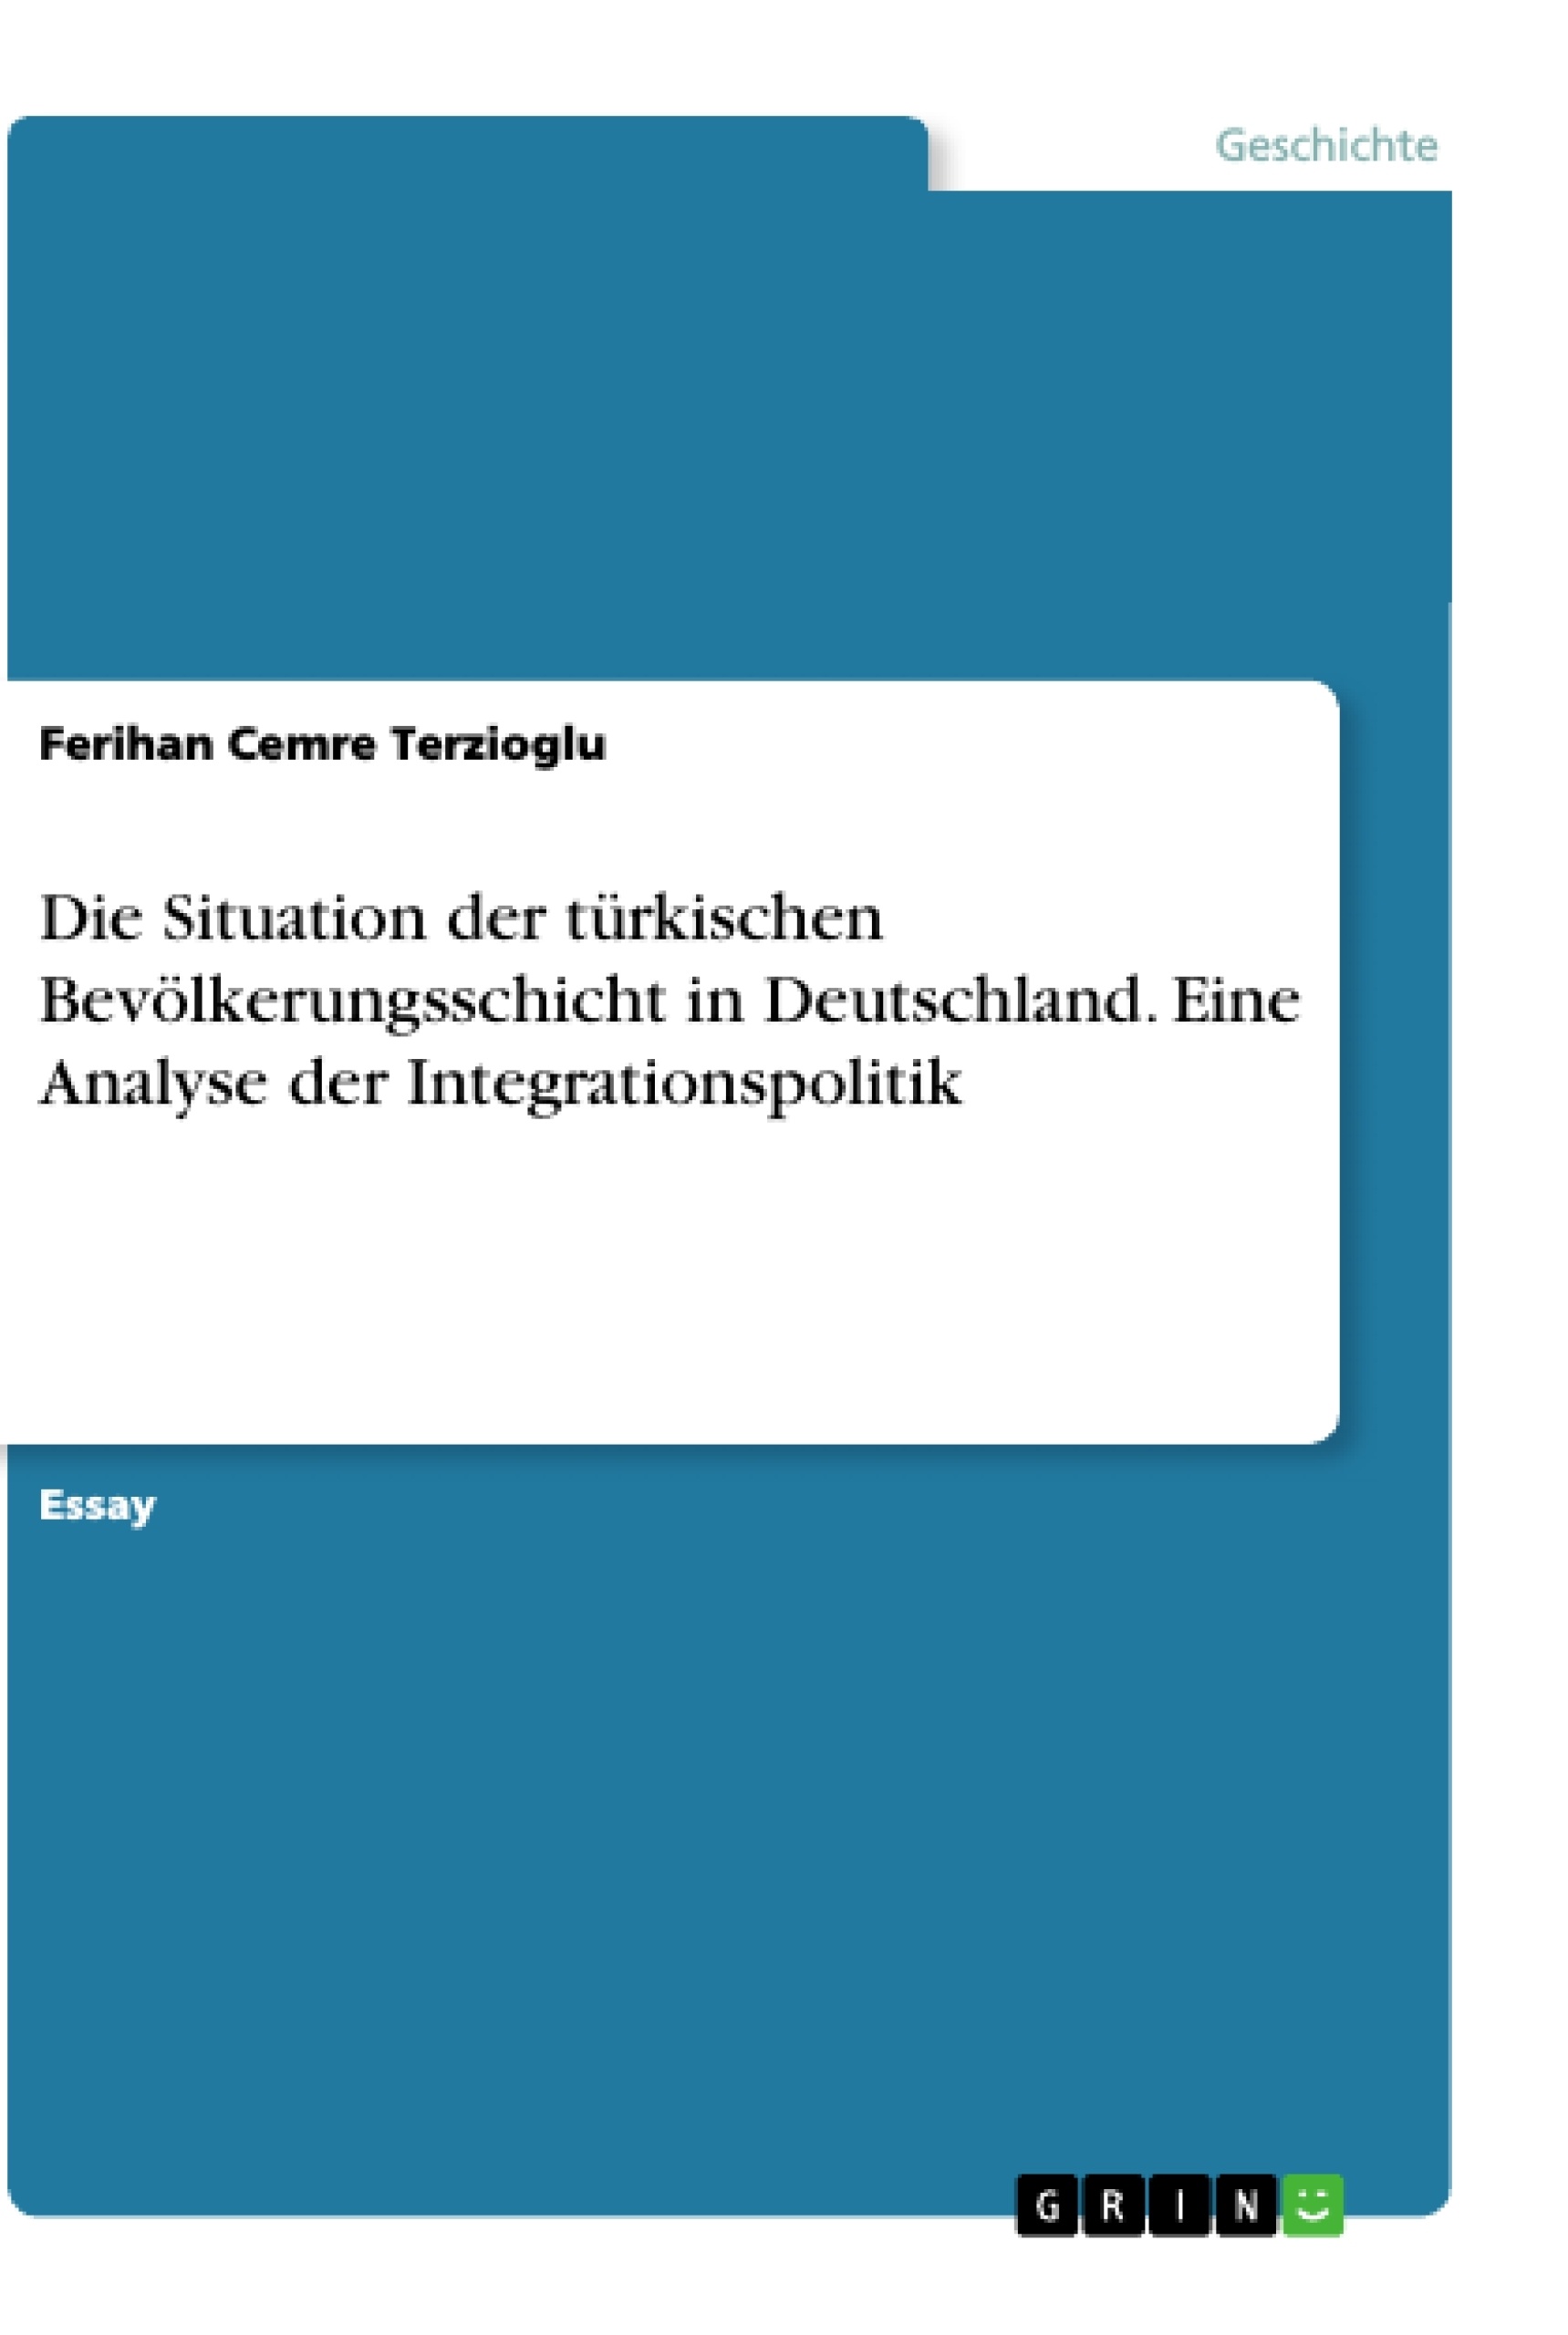 Title: Die Situation der türkischen Bevölkerungsschicht in Deutschland. Eine Analyse der Integrationspolitik